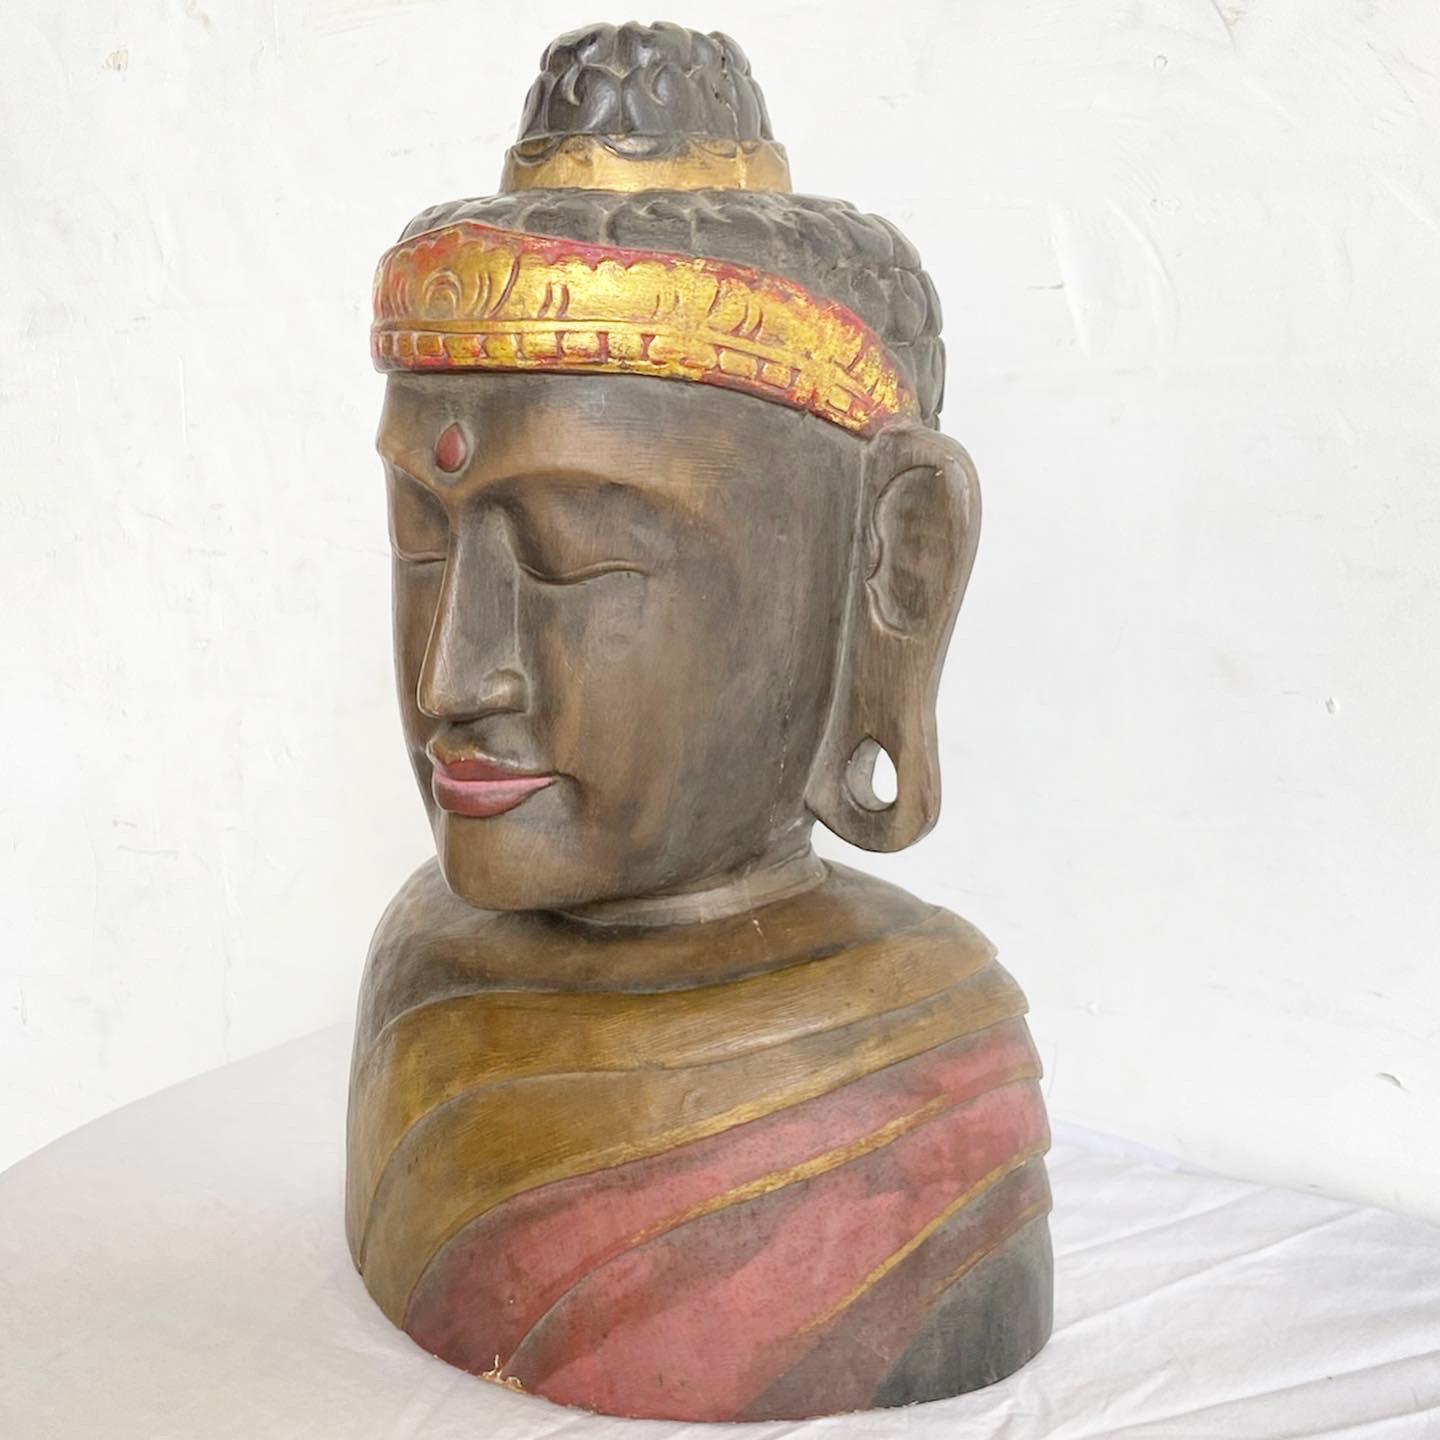 Trouvez la tranquillité dans la sculpture de la tête de bouddha en bois. Sculptée à la main avec des détails méticuleux, cette pièce capture l'essence de la paix et de l'attention. Le grain naturel du bois rehausse sa beauté, ce qui en fait non